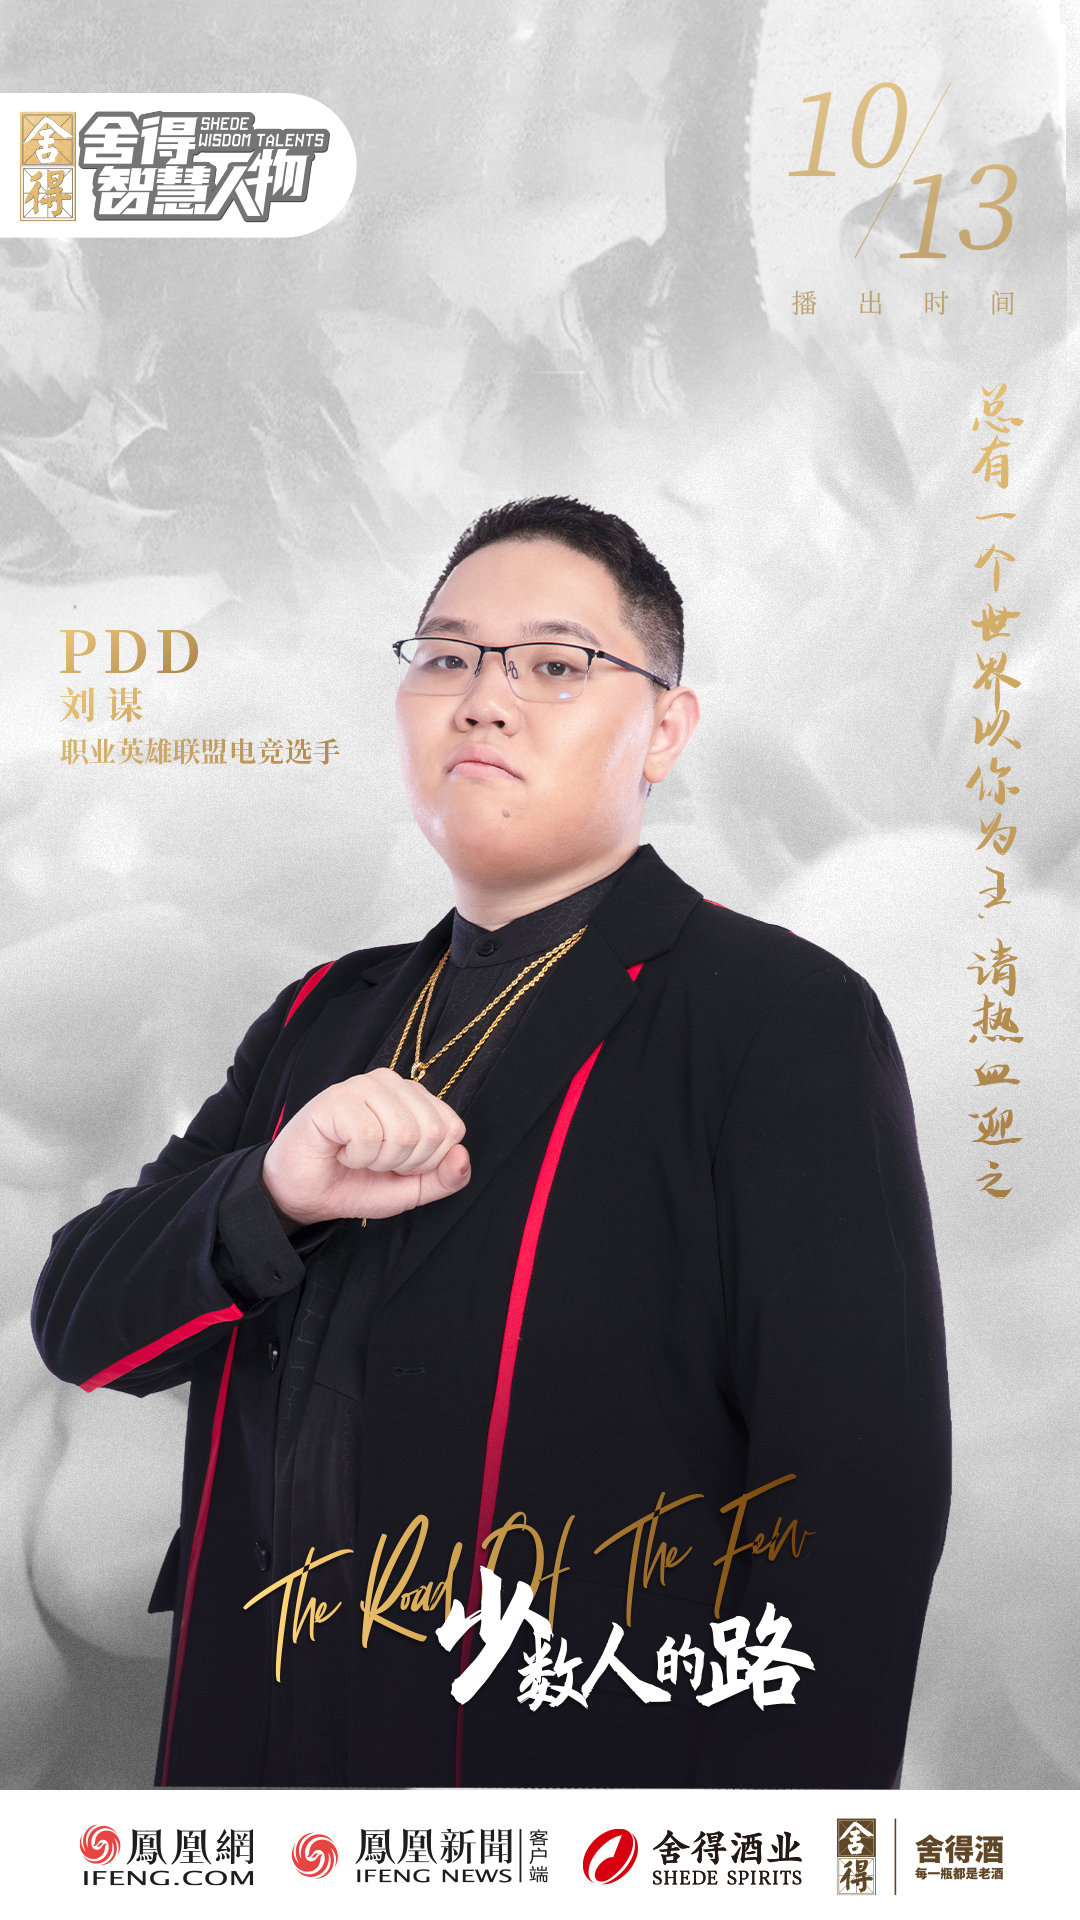 PDD揭秘电竞王国之路 “网瘾少年”终成“电竞教父”  